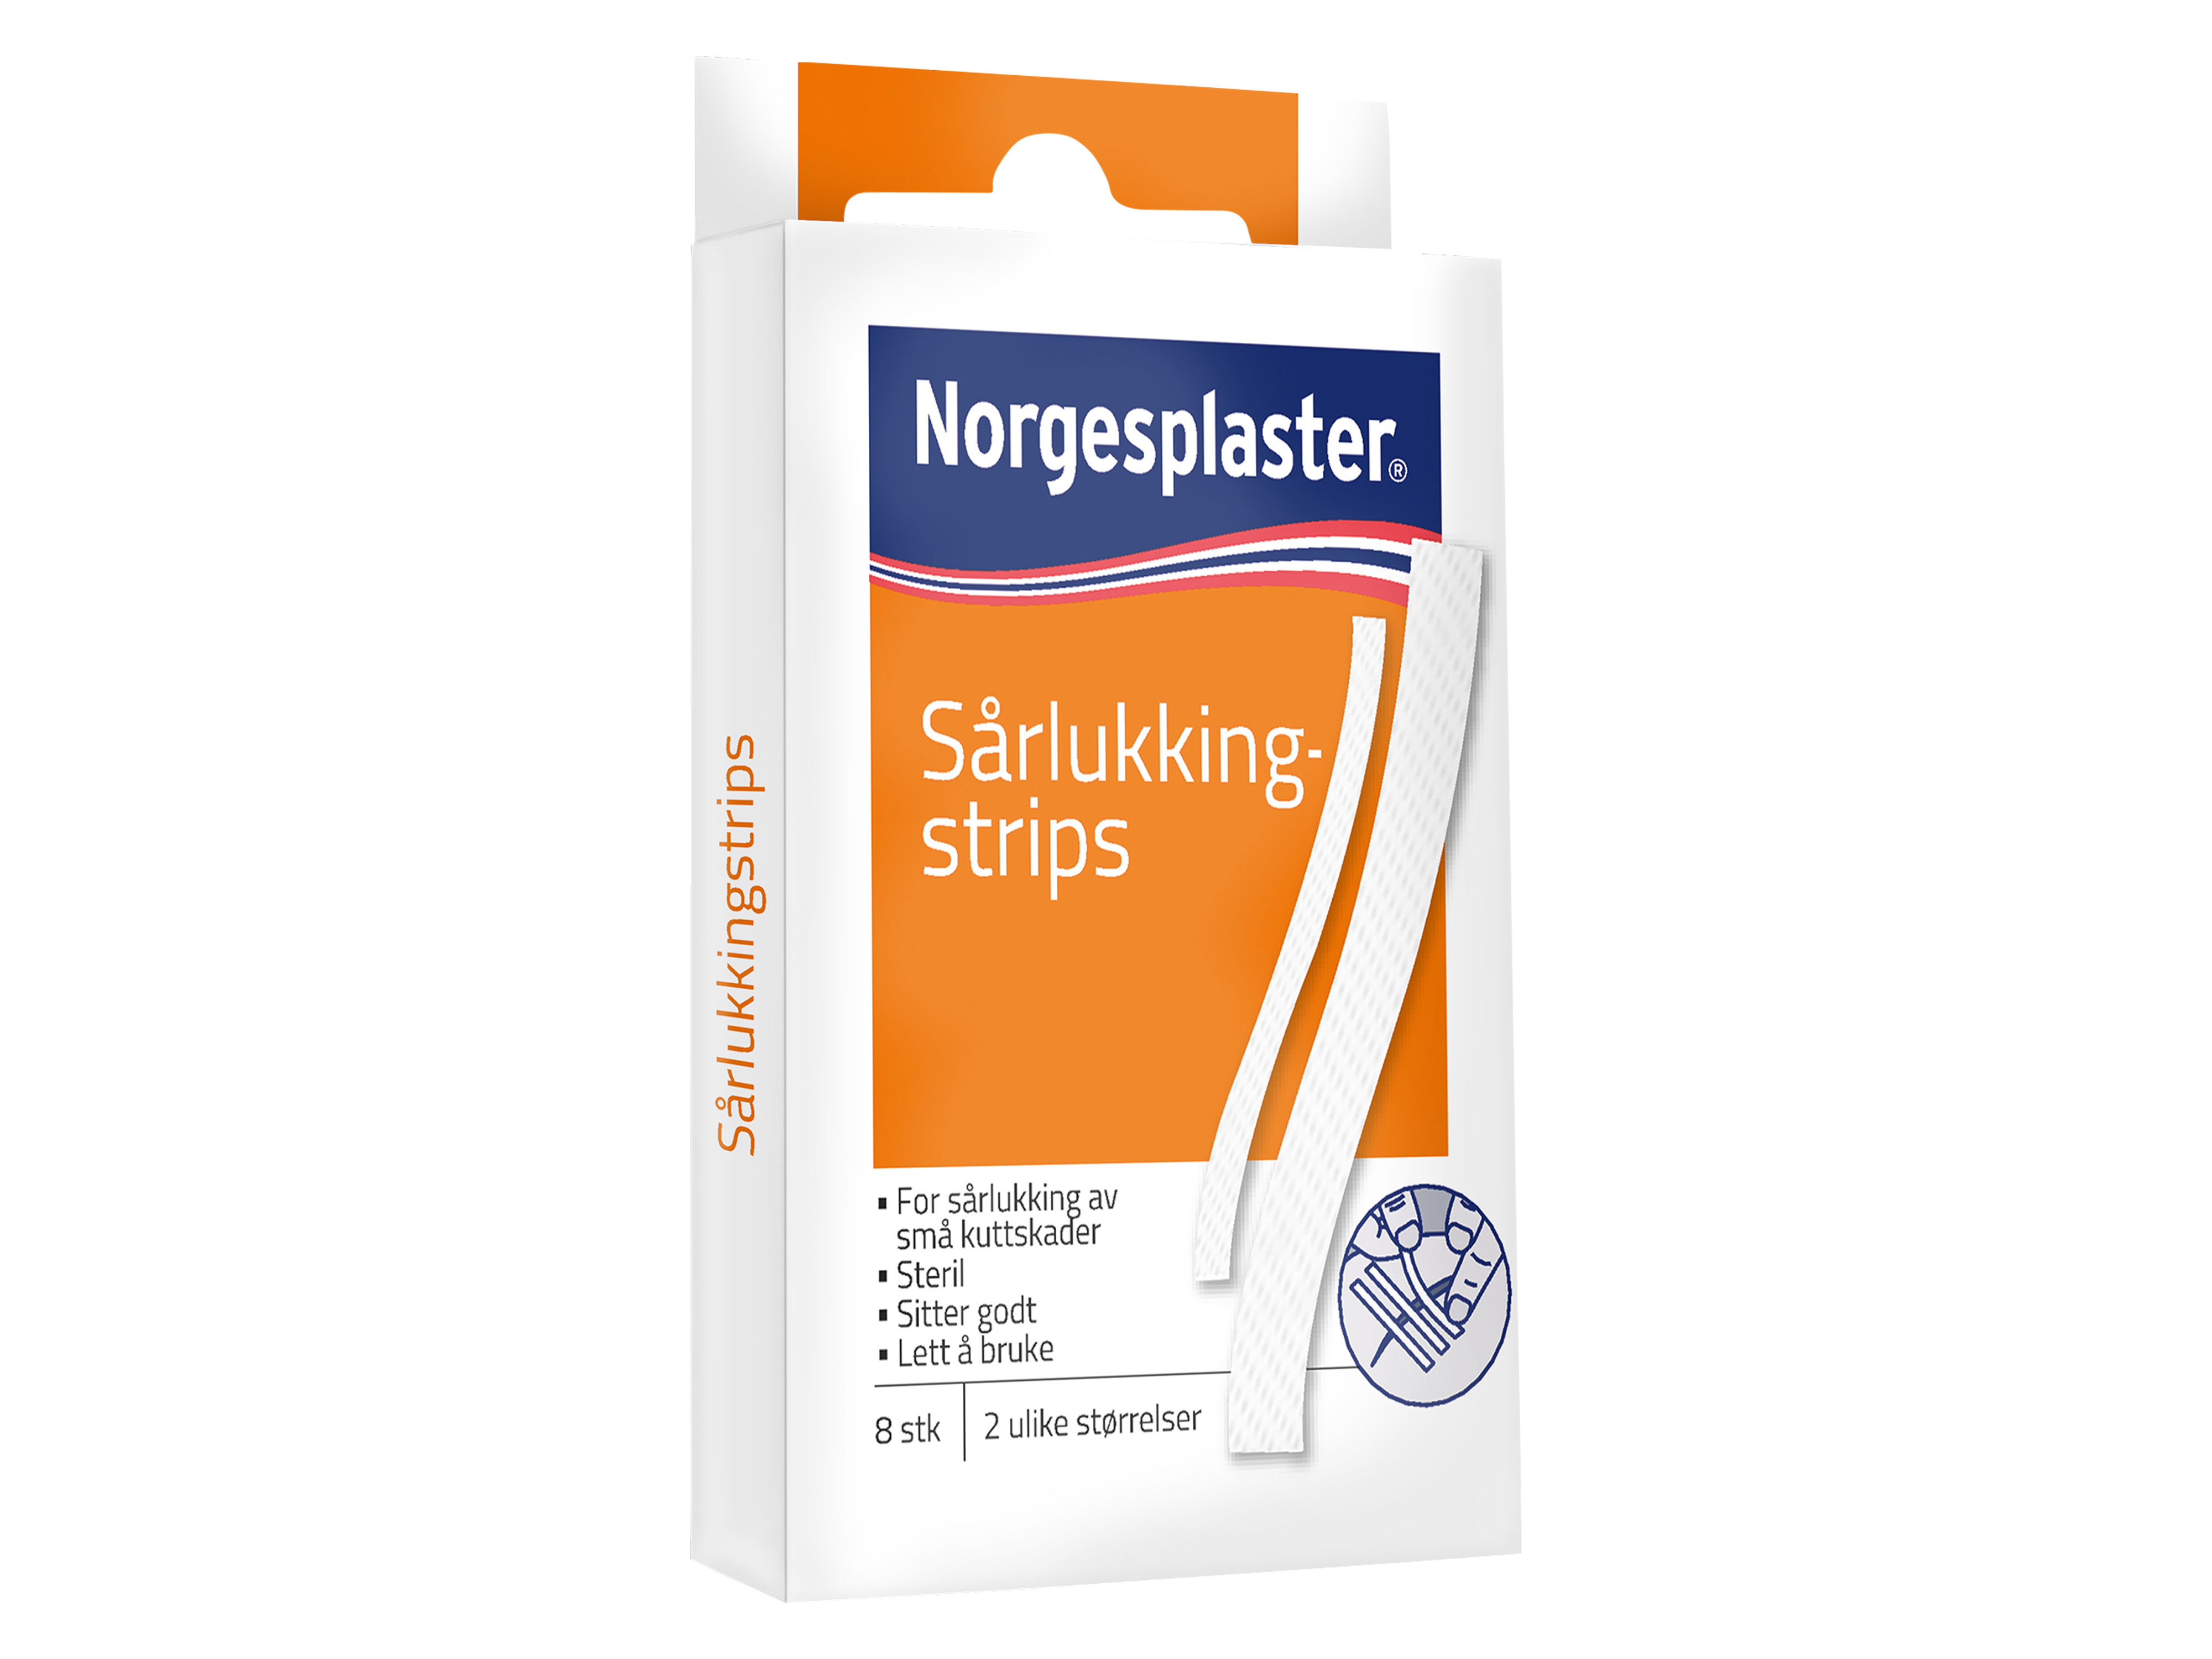 Norgesplaster Sårlukkingstrips, 8 stk.